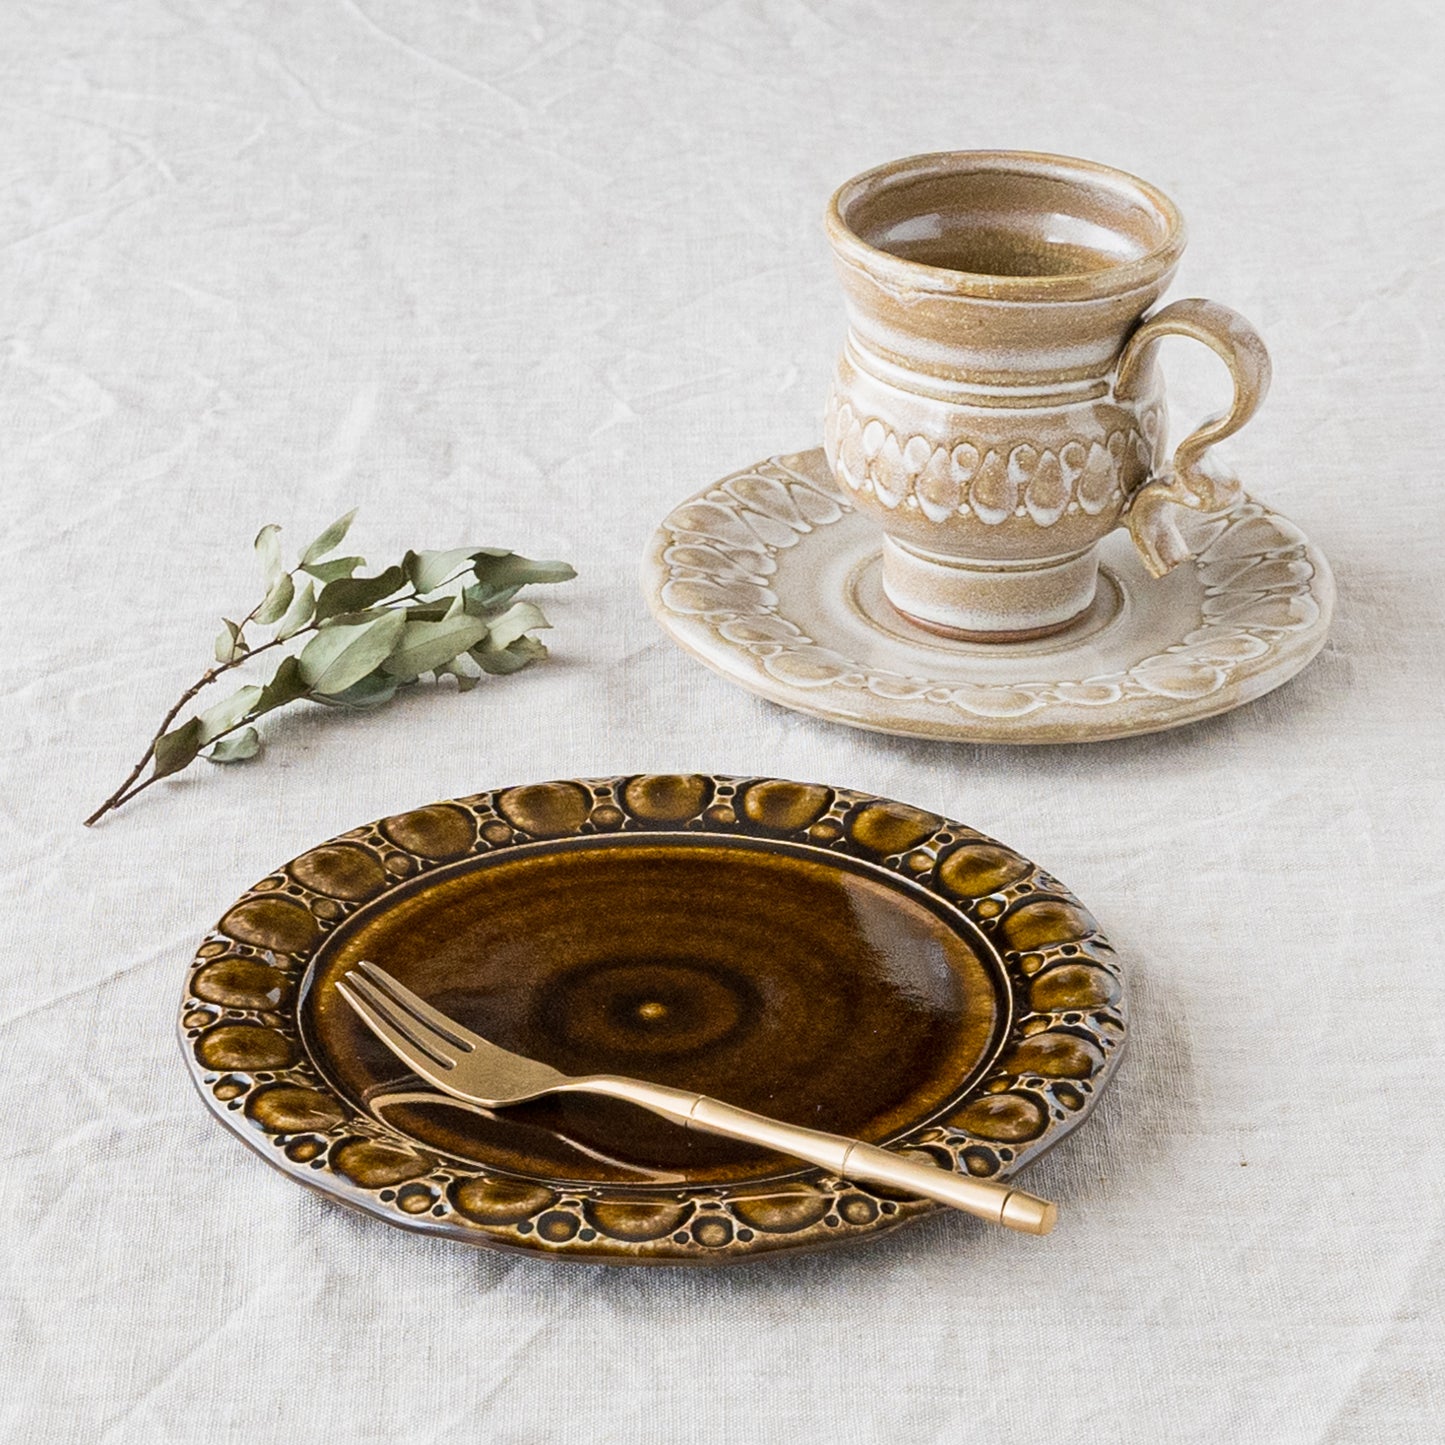 ルリアメ工房さんのカップ&ソーサー鍵手うのふ白釉とパン皿